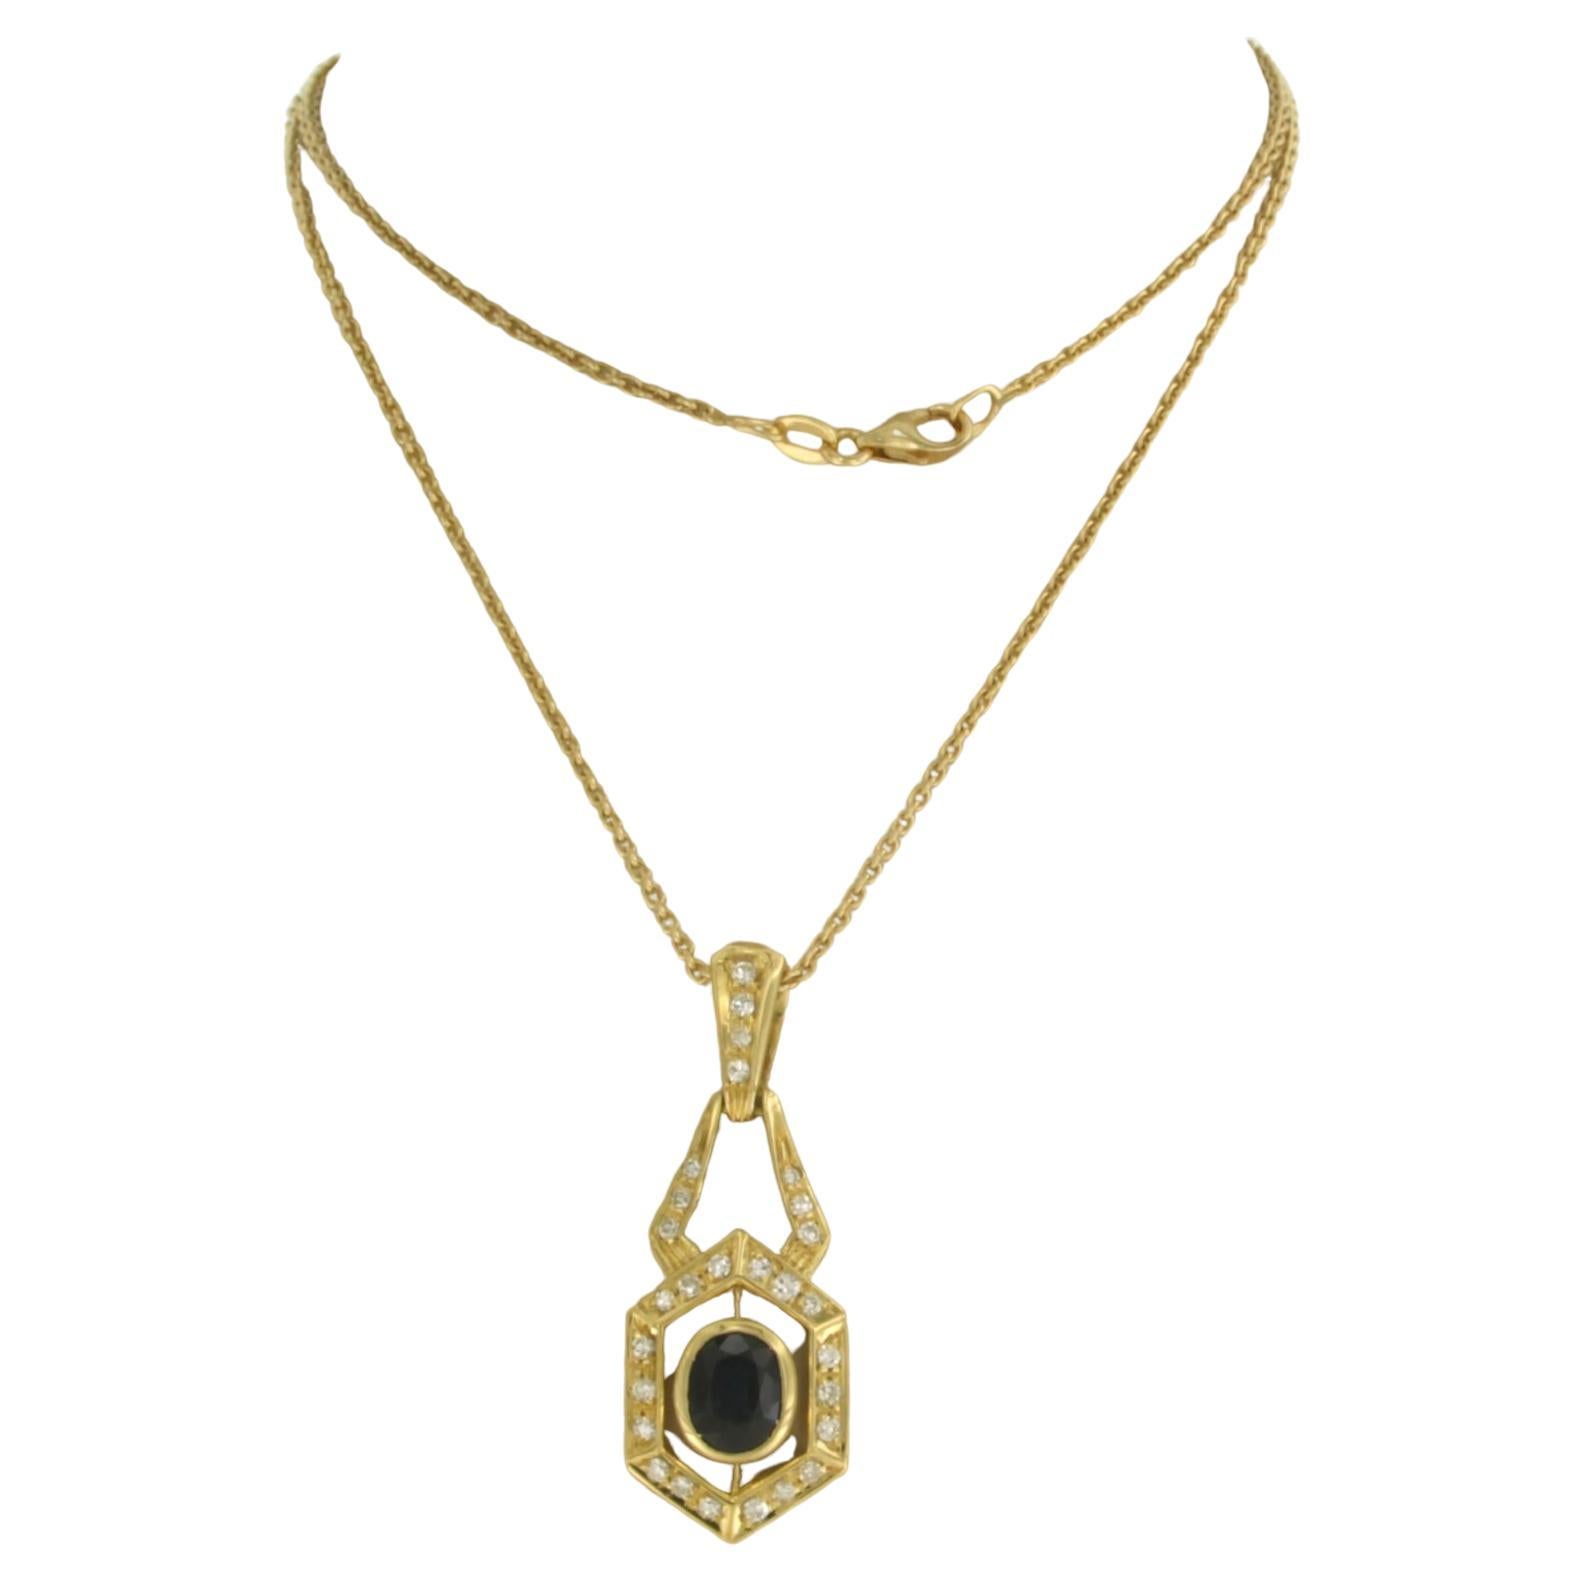 Chaîne et pendentif sertis de saphirs jusqu'à 0,70 carat et diamants or jaune 18 carats